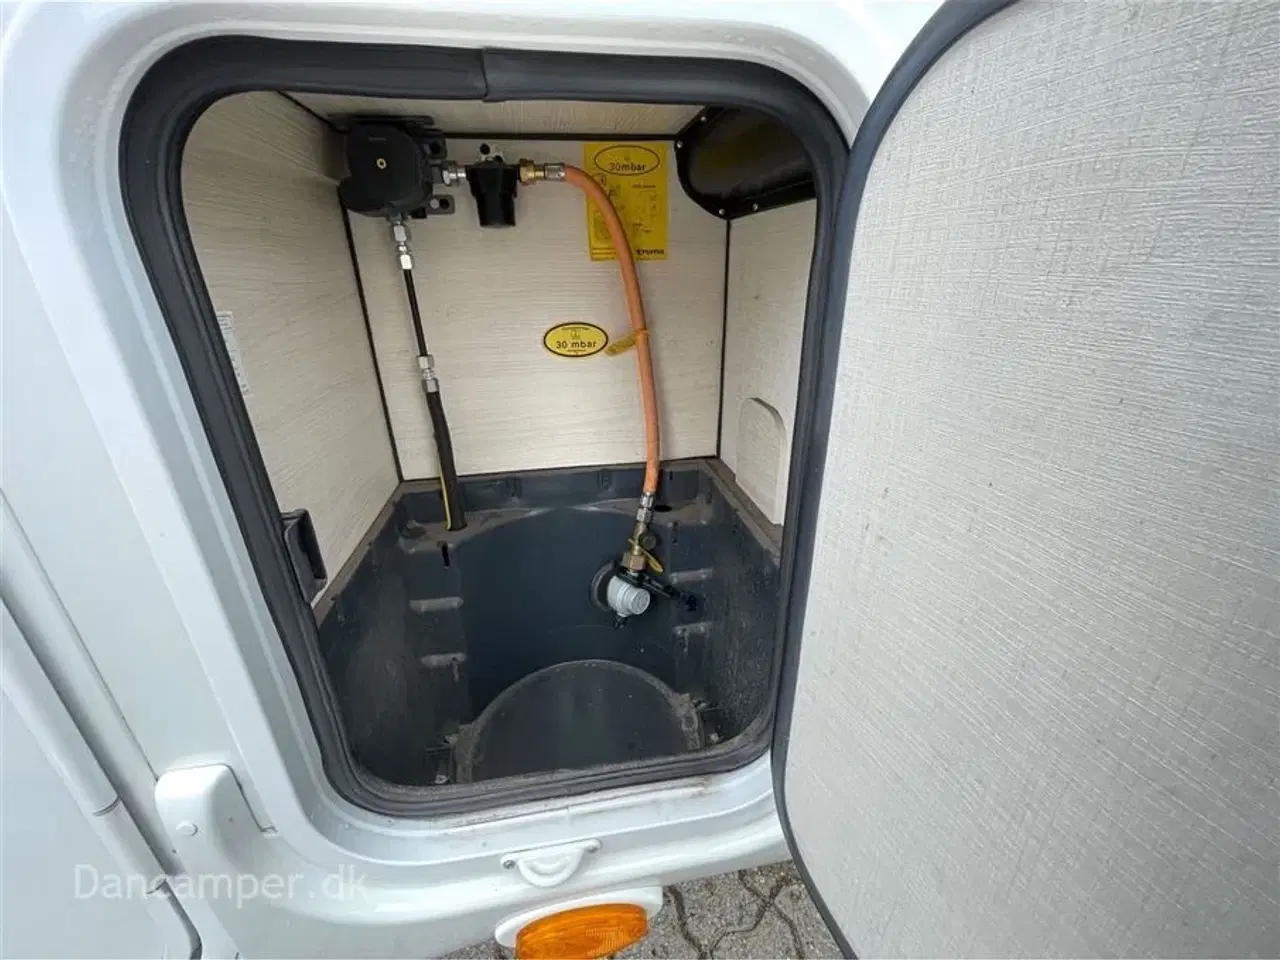 Billede 22 - 2020 - Chausson Flash 514   Anvisningsbil.  Højdejusterbar dobbeltseng over garage, Truma monoControl, 170 HK, under 6-meter